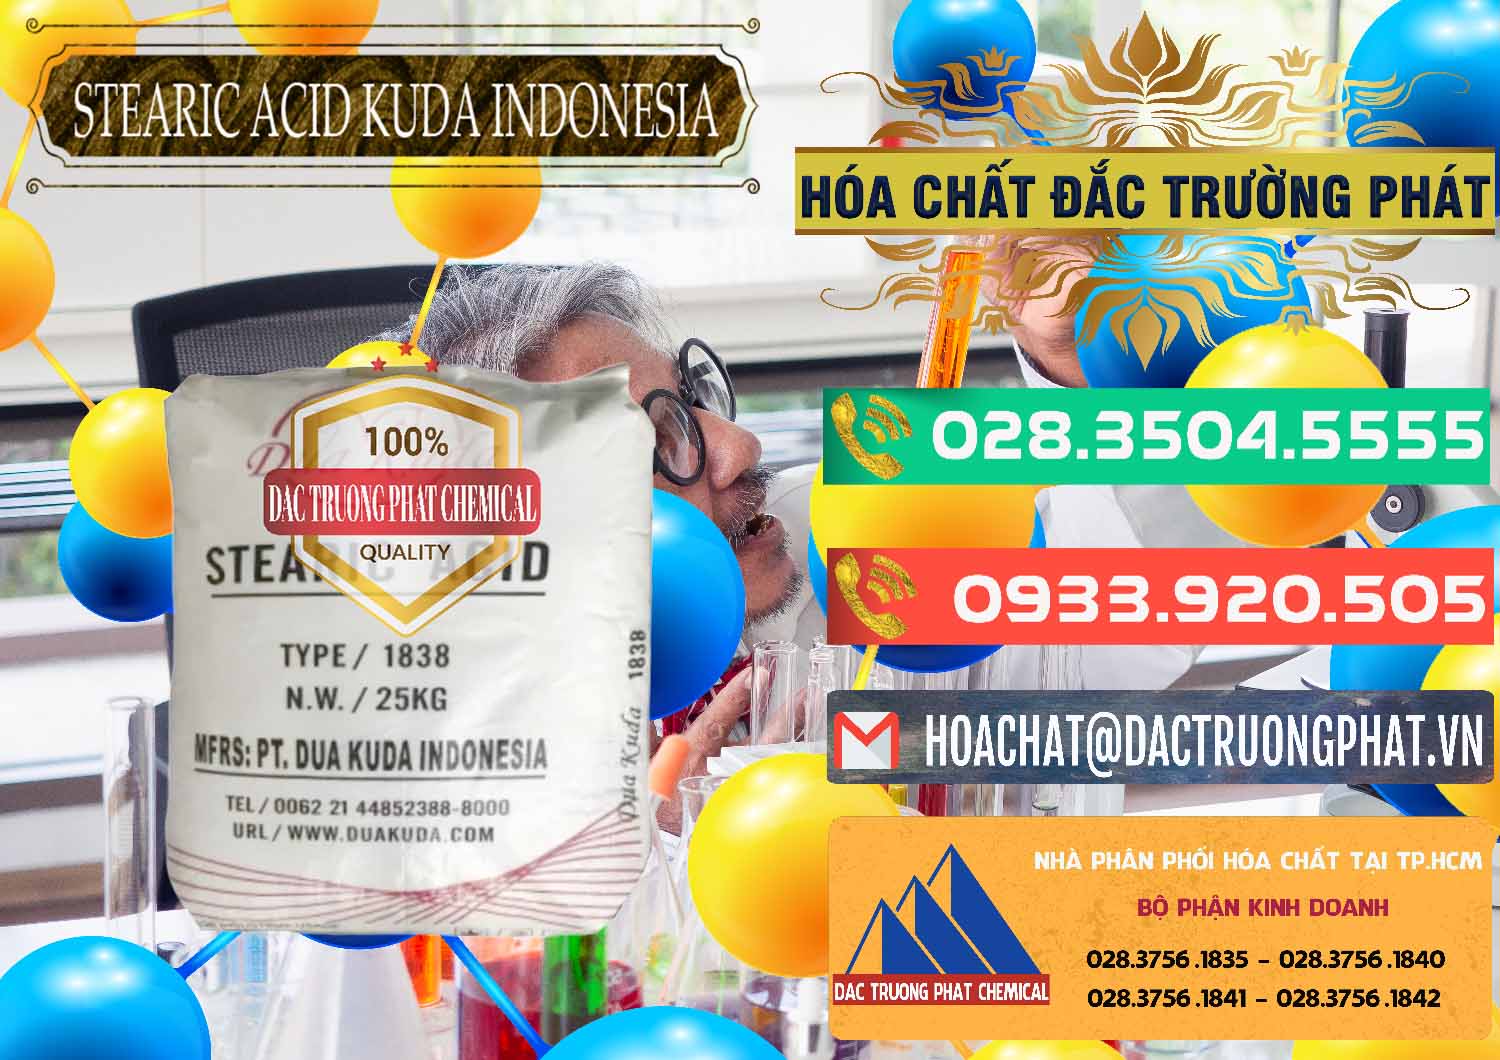 Cty chuyên bán ( cung ứng ) Axit Stearic - Stearic Acid Dua Kuda Indonesia - 0388 - Chuyên bán - phân phối hóa chất tại TP.HCM - congtyhoachat.com.vn